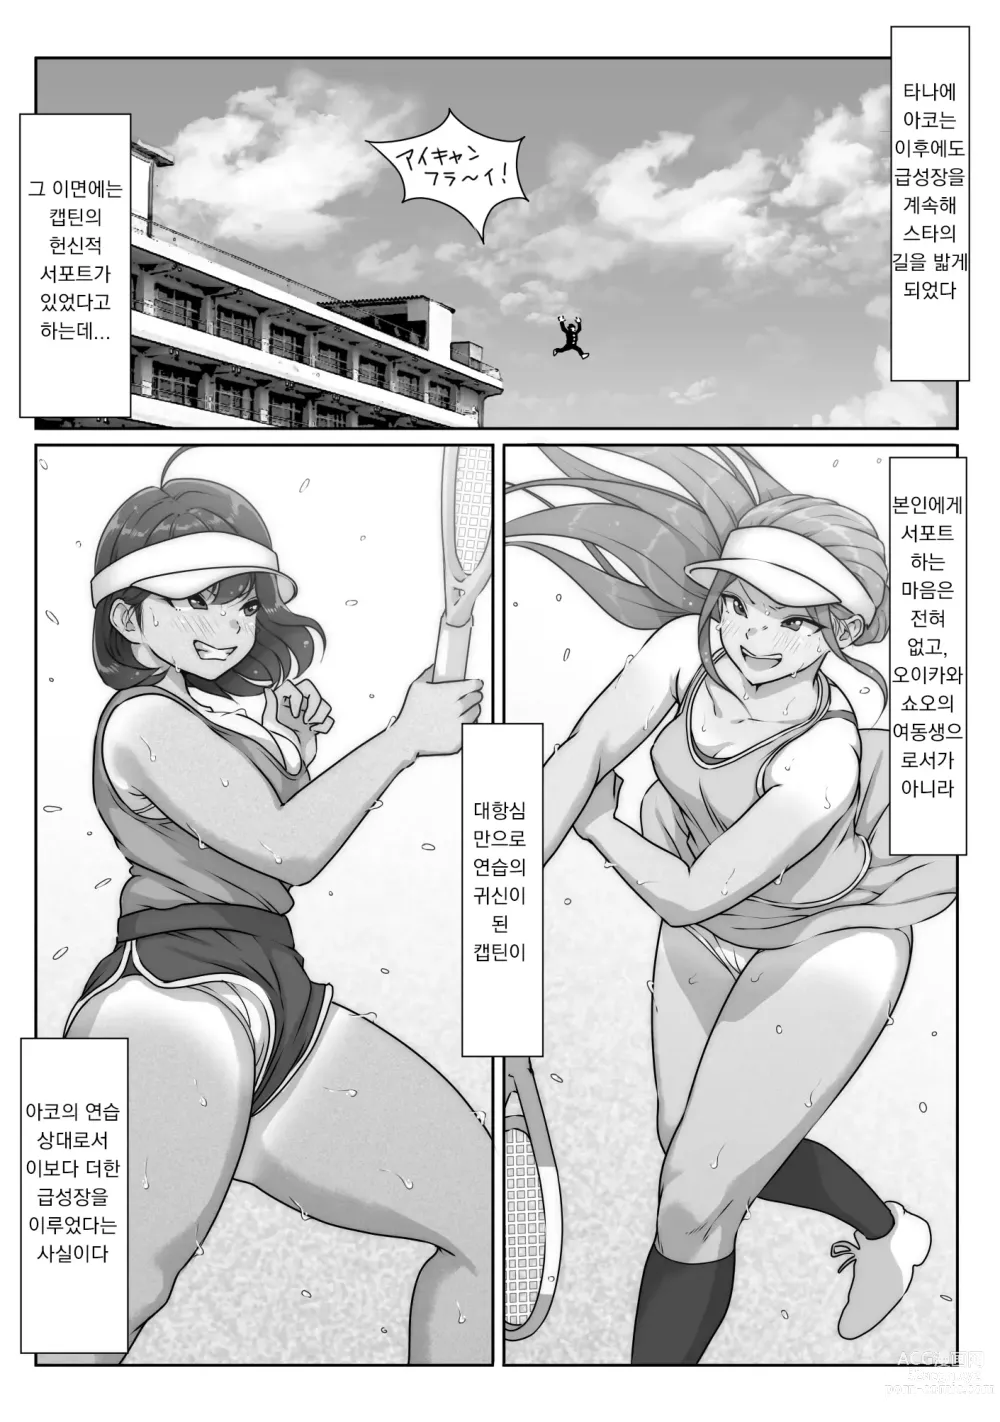 Page 115 of doujinshi 테니스부는 야구부의 손에 떨어졌습니다